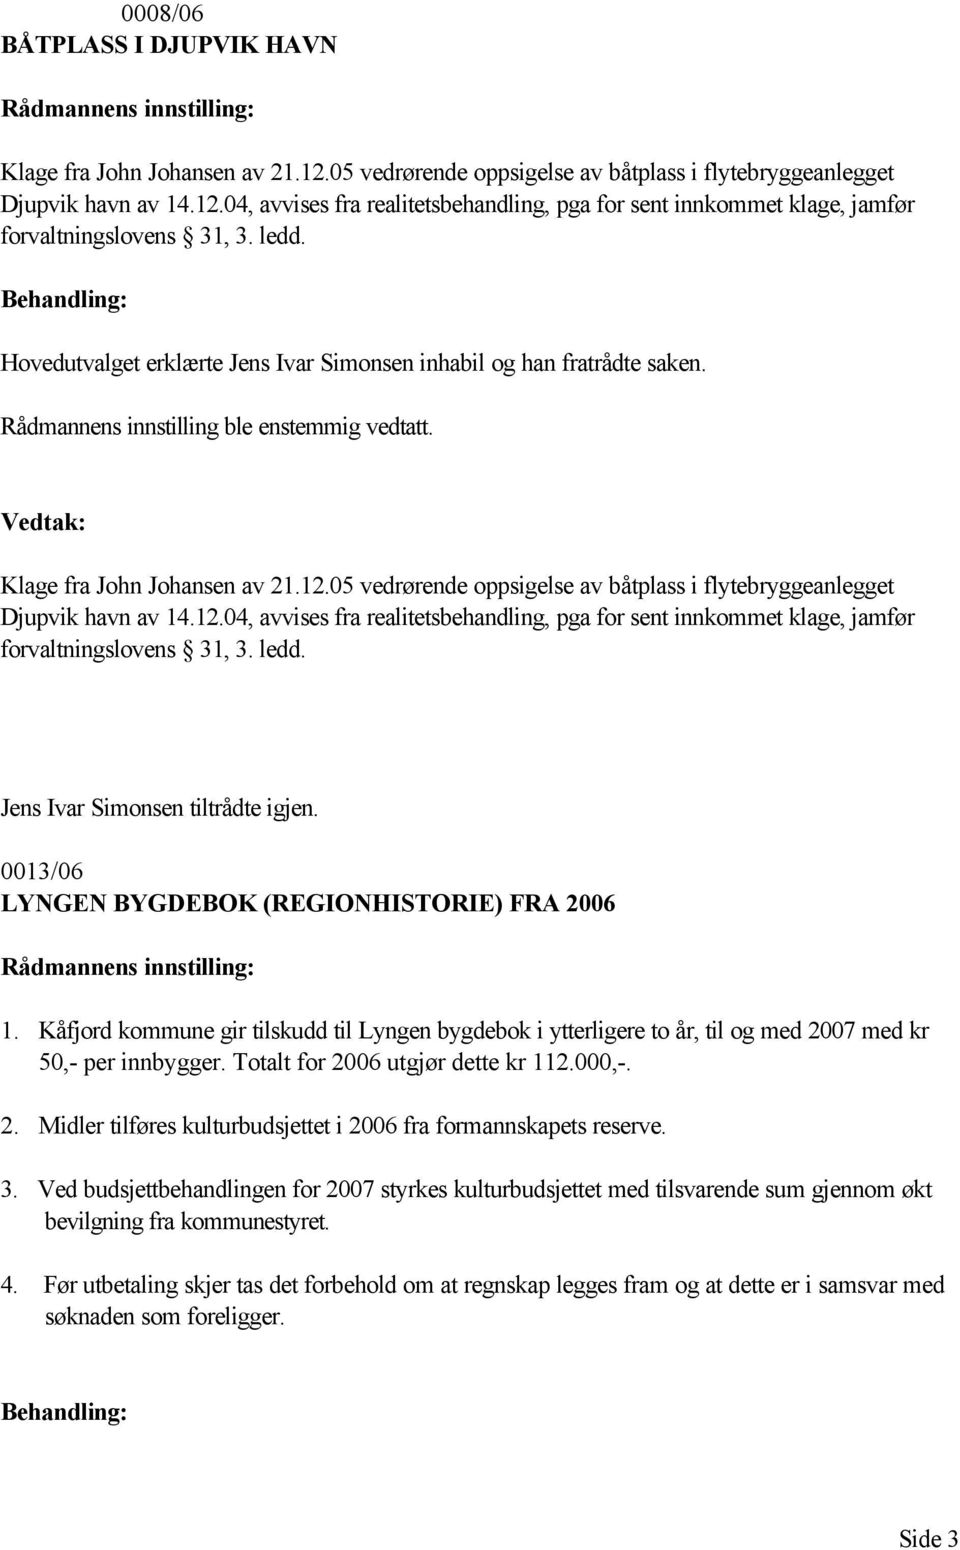 05 vedrørende oppsigelse av båtplass i flytebryggeanlegget Djupvik havn av 14.12.04, avvises fra realitetsbehandling, pga for sent innkommet klage, jamfør forvaltningslovens 31, 3. ledd.